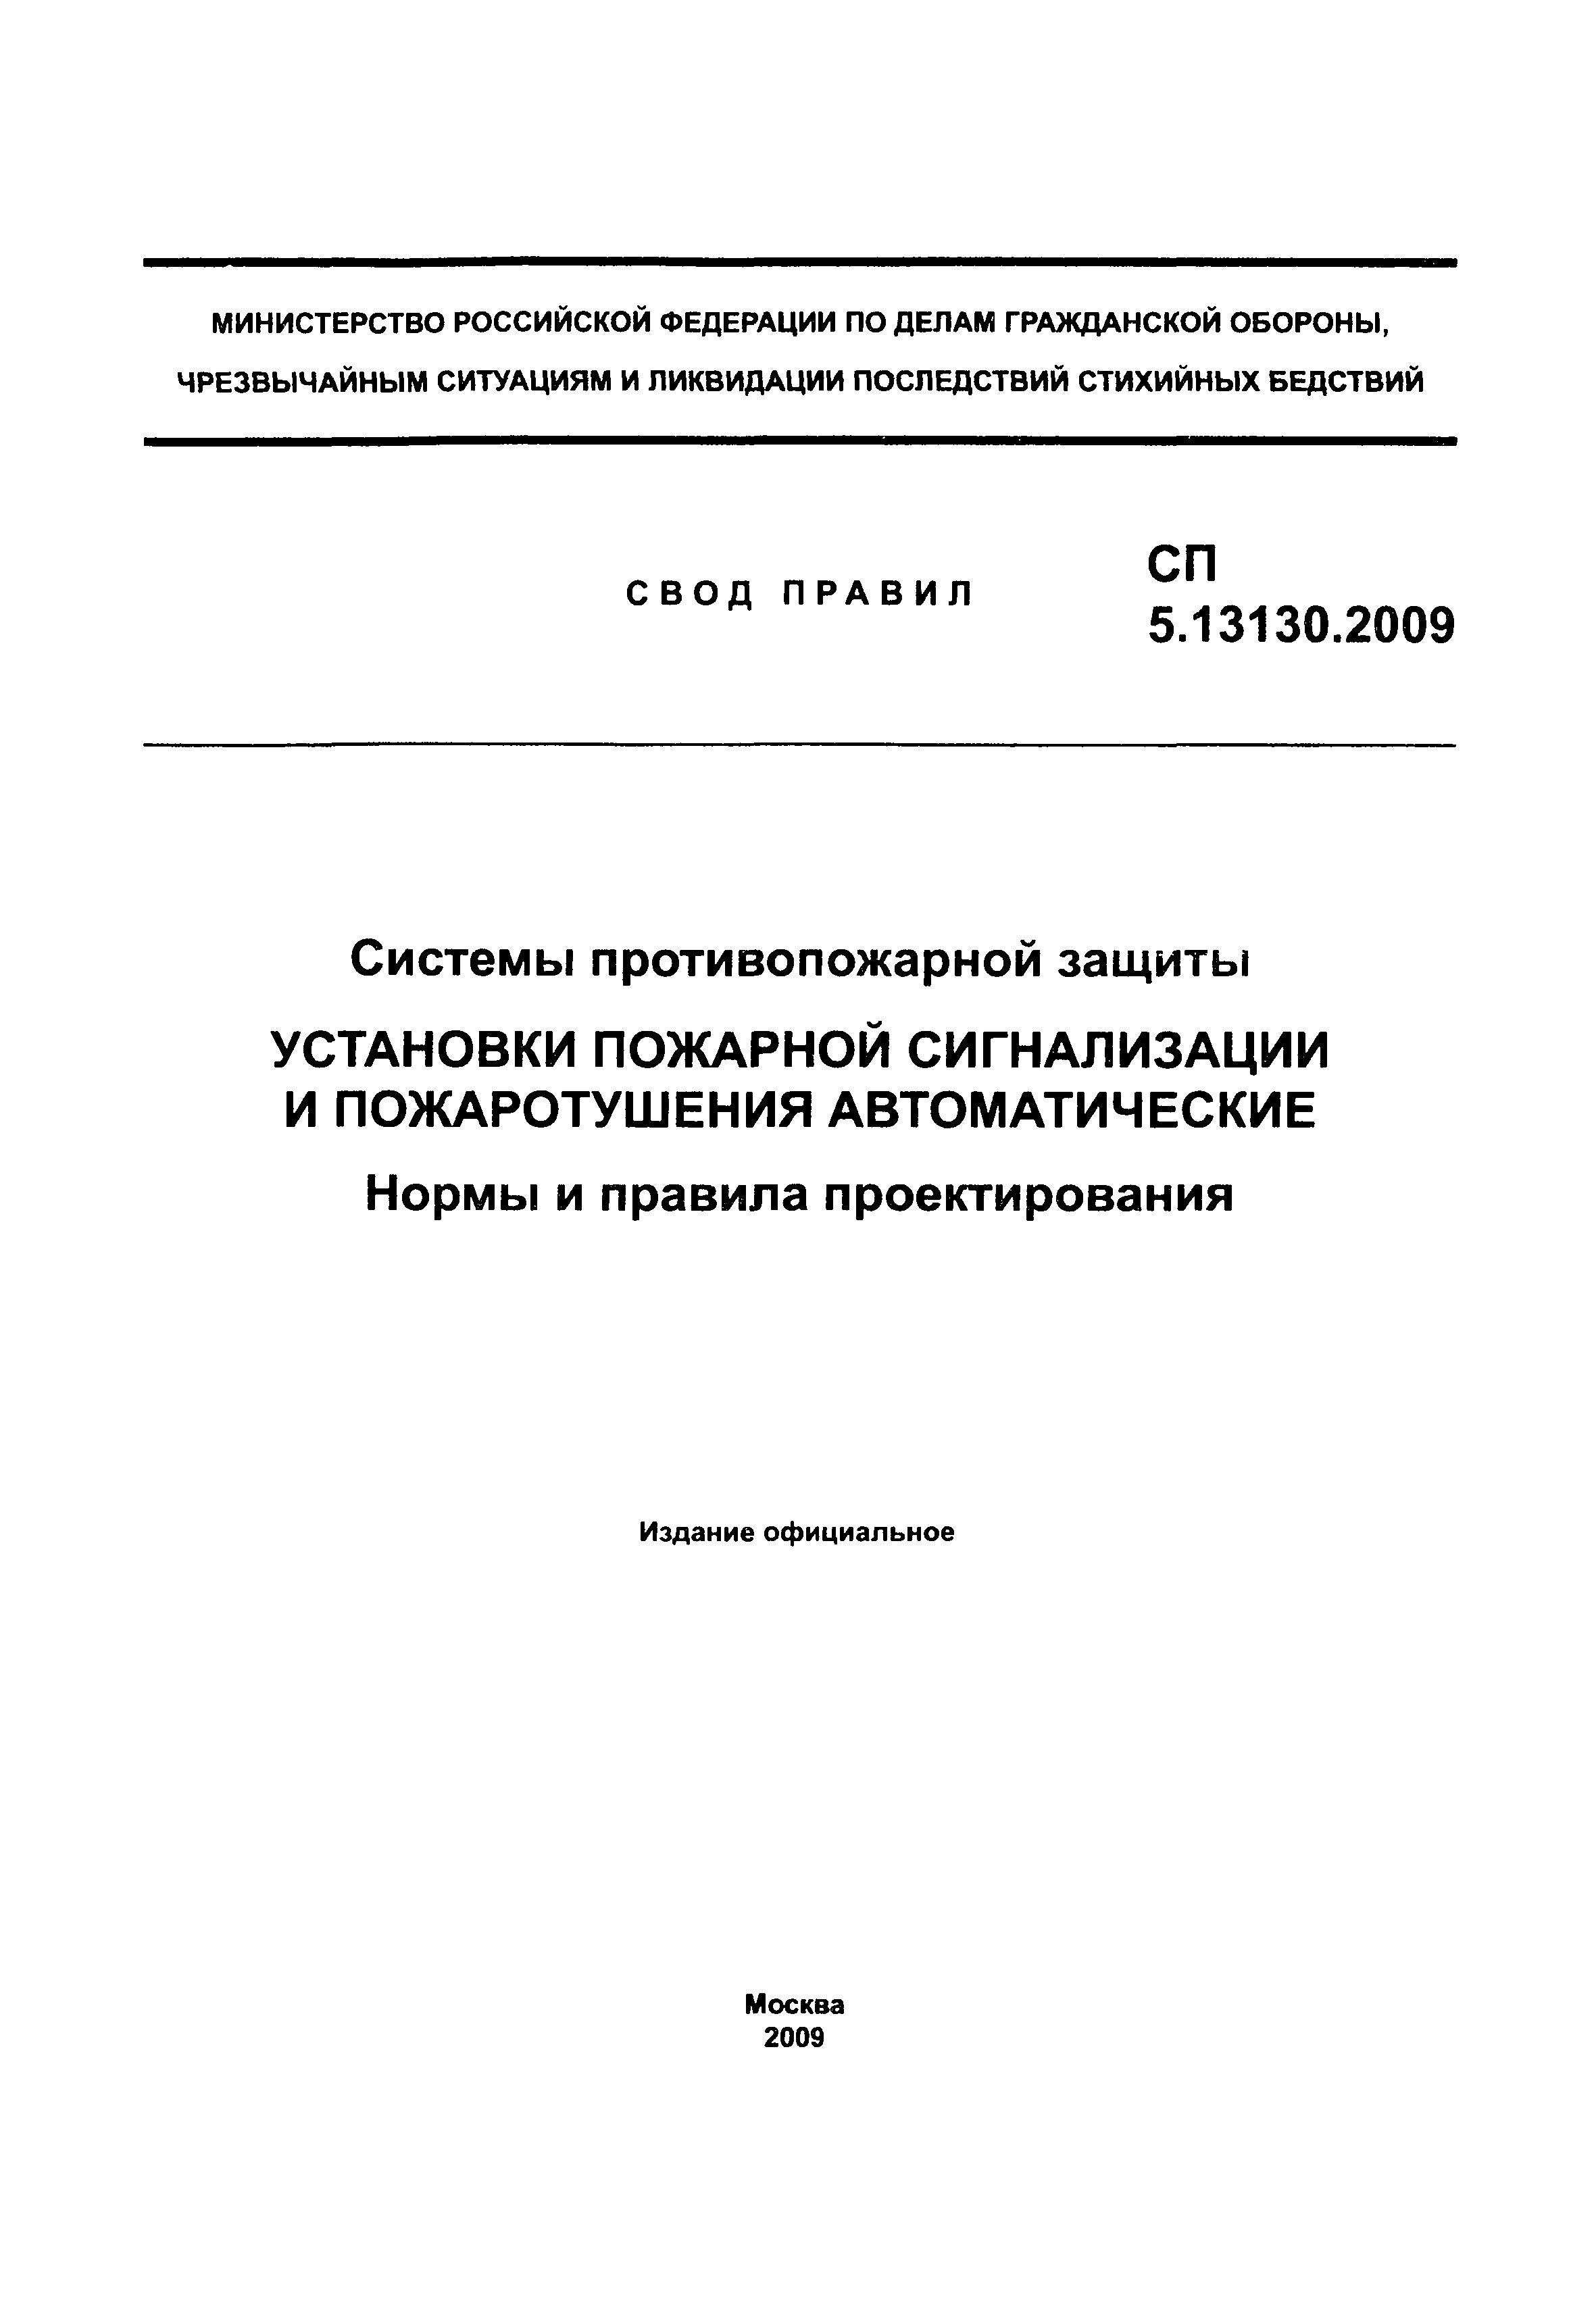 СП 5.13130.2009